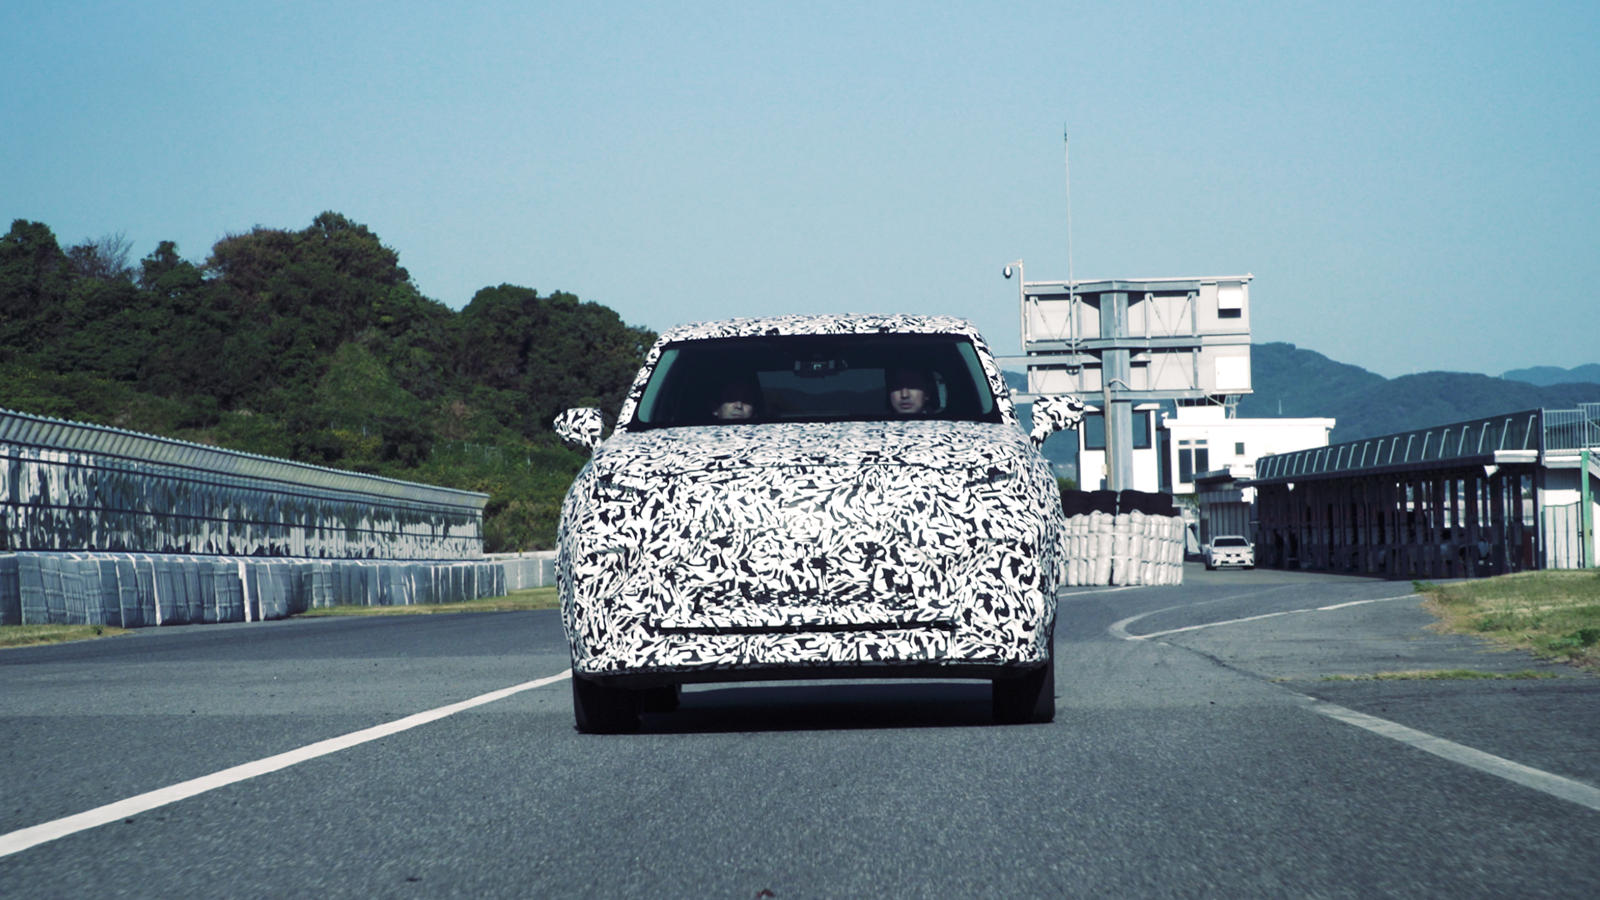 По словам главного инженера Такаши Ватанабе, одним из ключевых аспектов концепции Lexus Electrified является использование новых технологий для улучшения впечатлений от вождения, а не для их ослабления из-за электрификации.